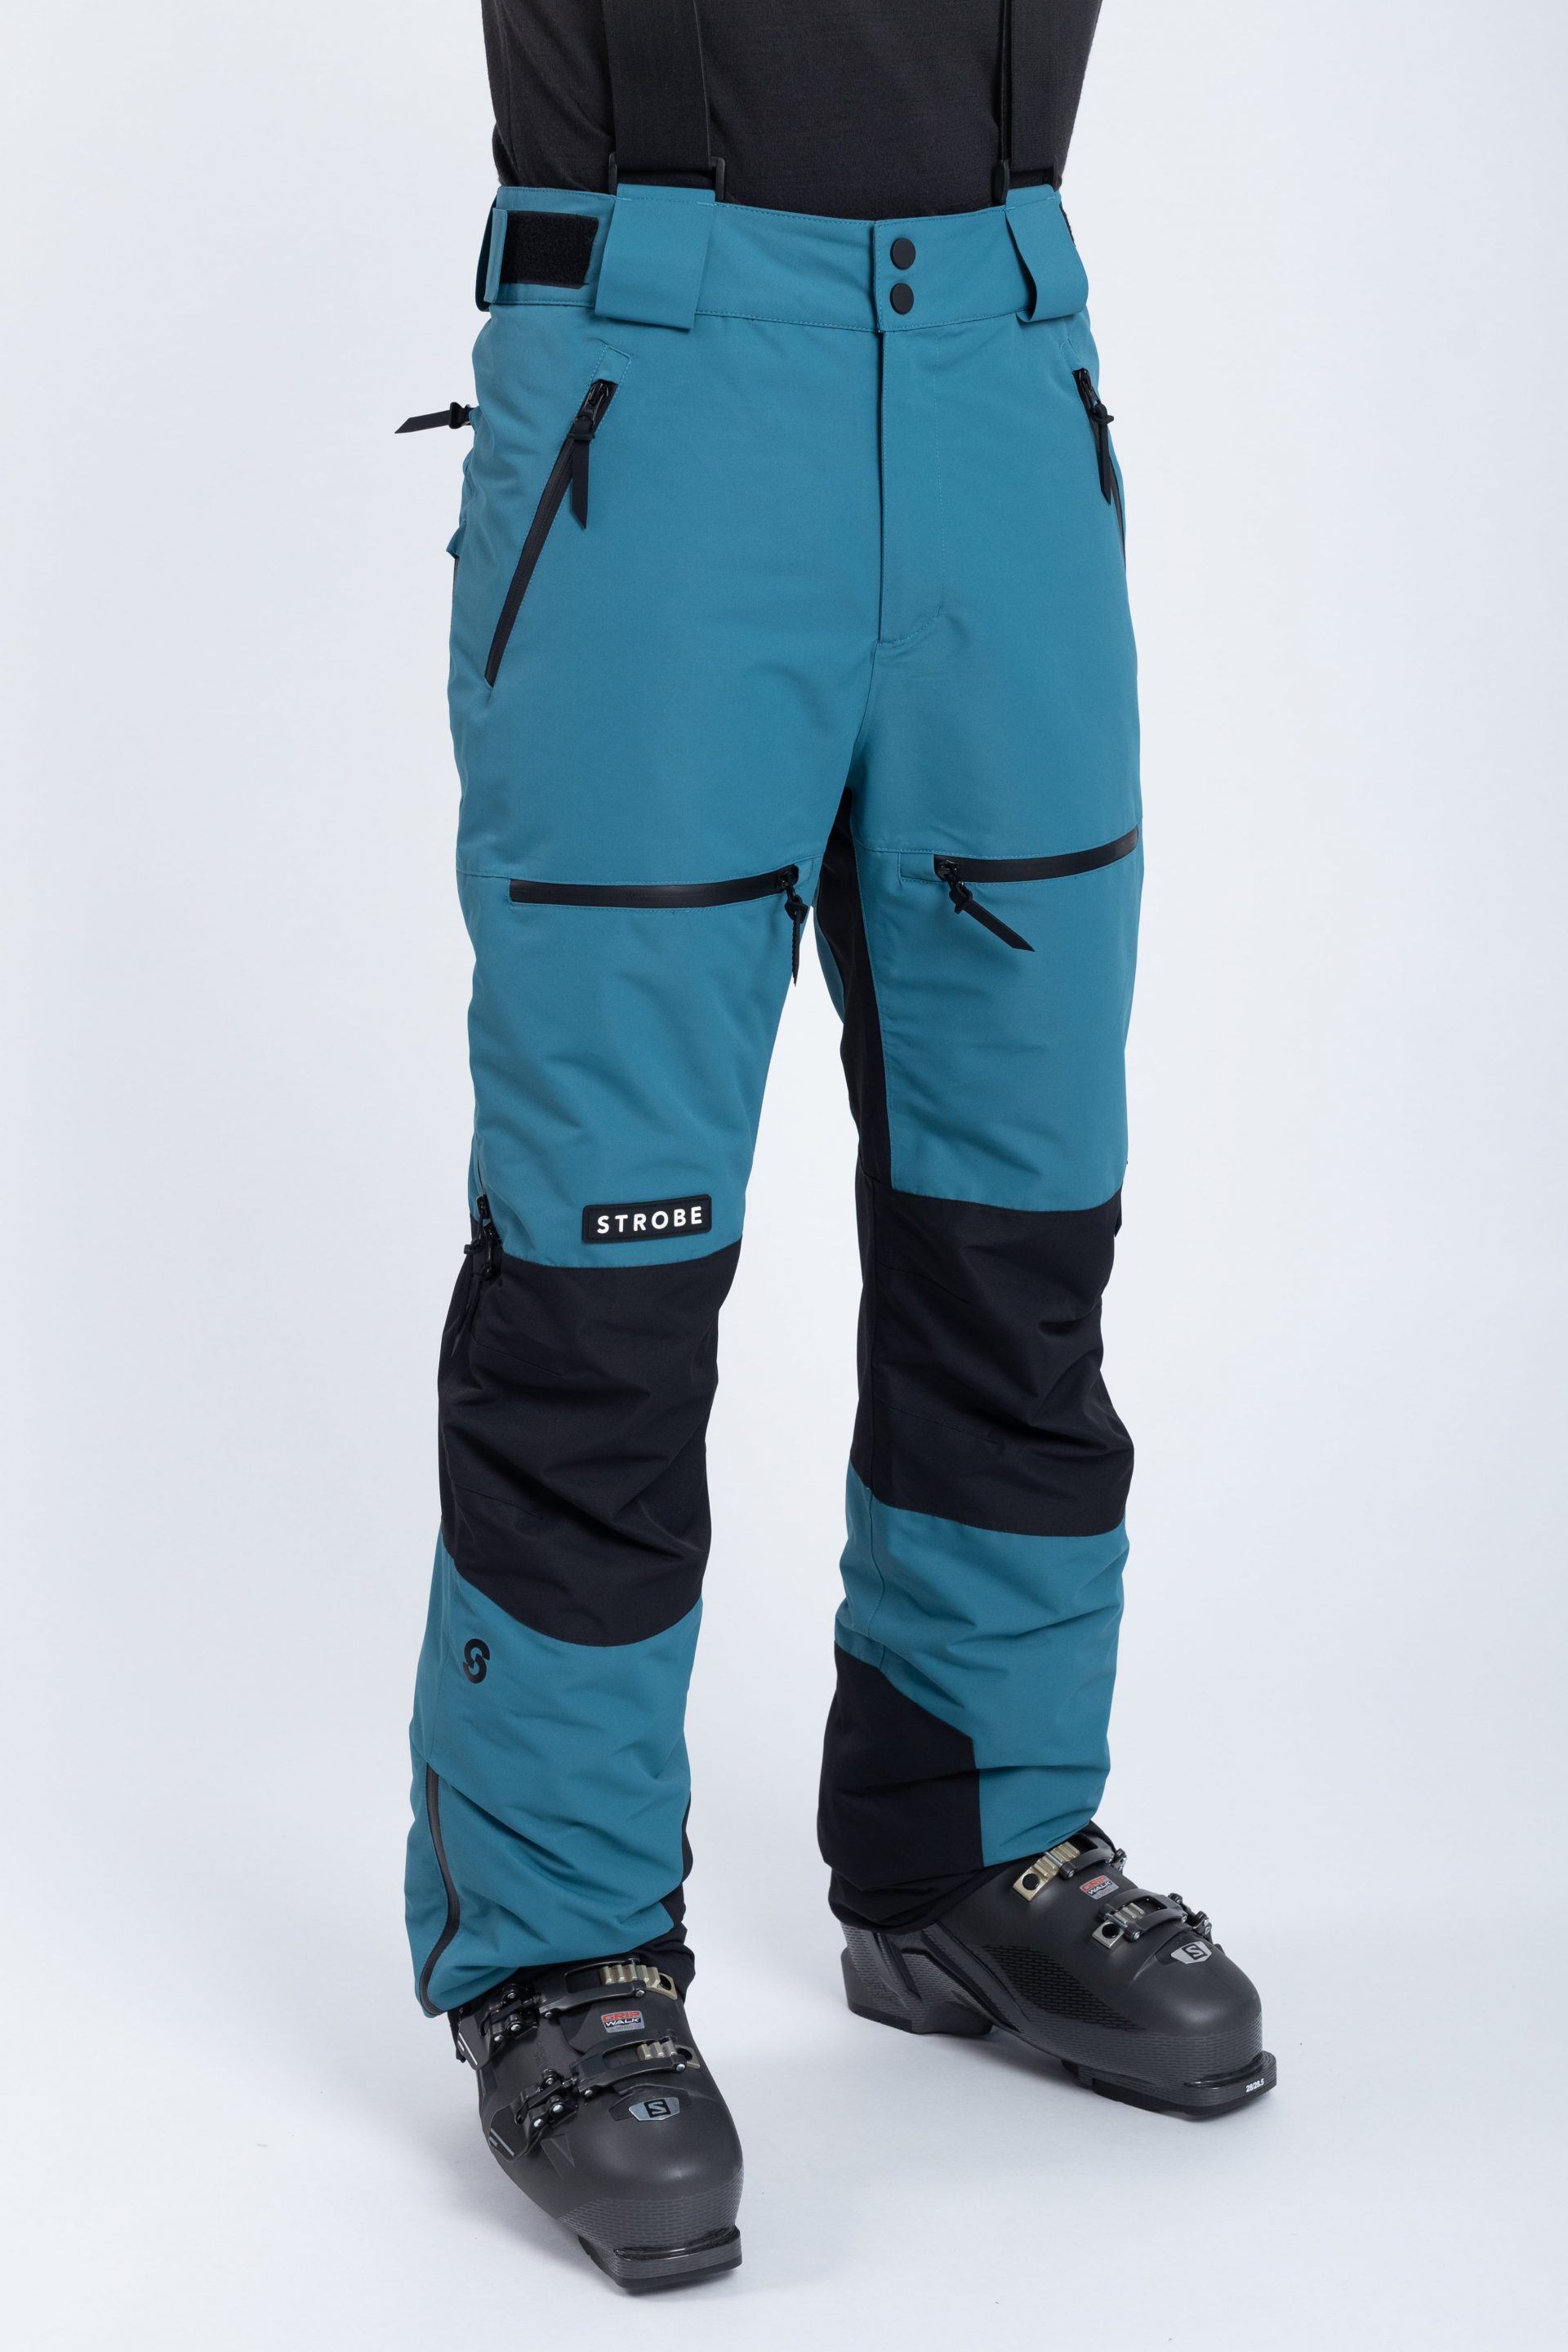 Lynx Ski Pants Black - Men's - Strobe